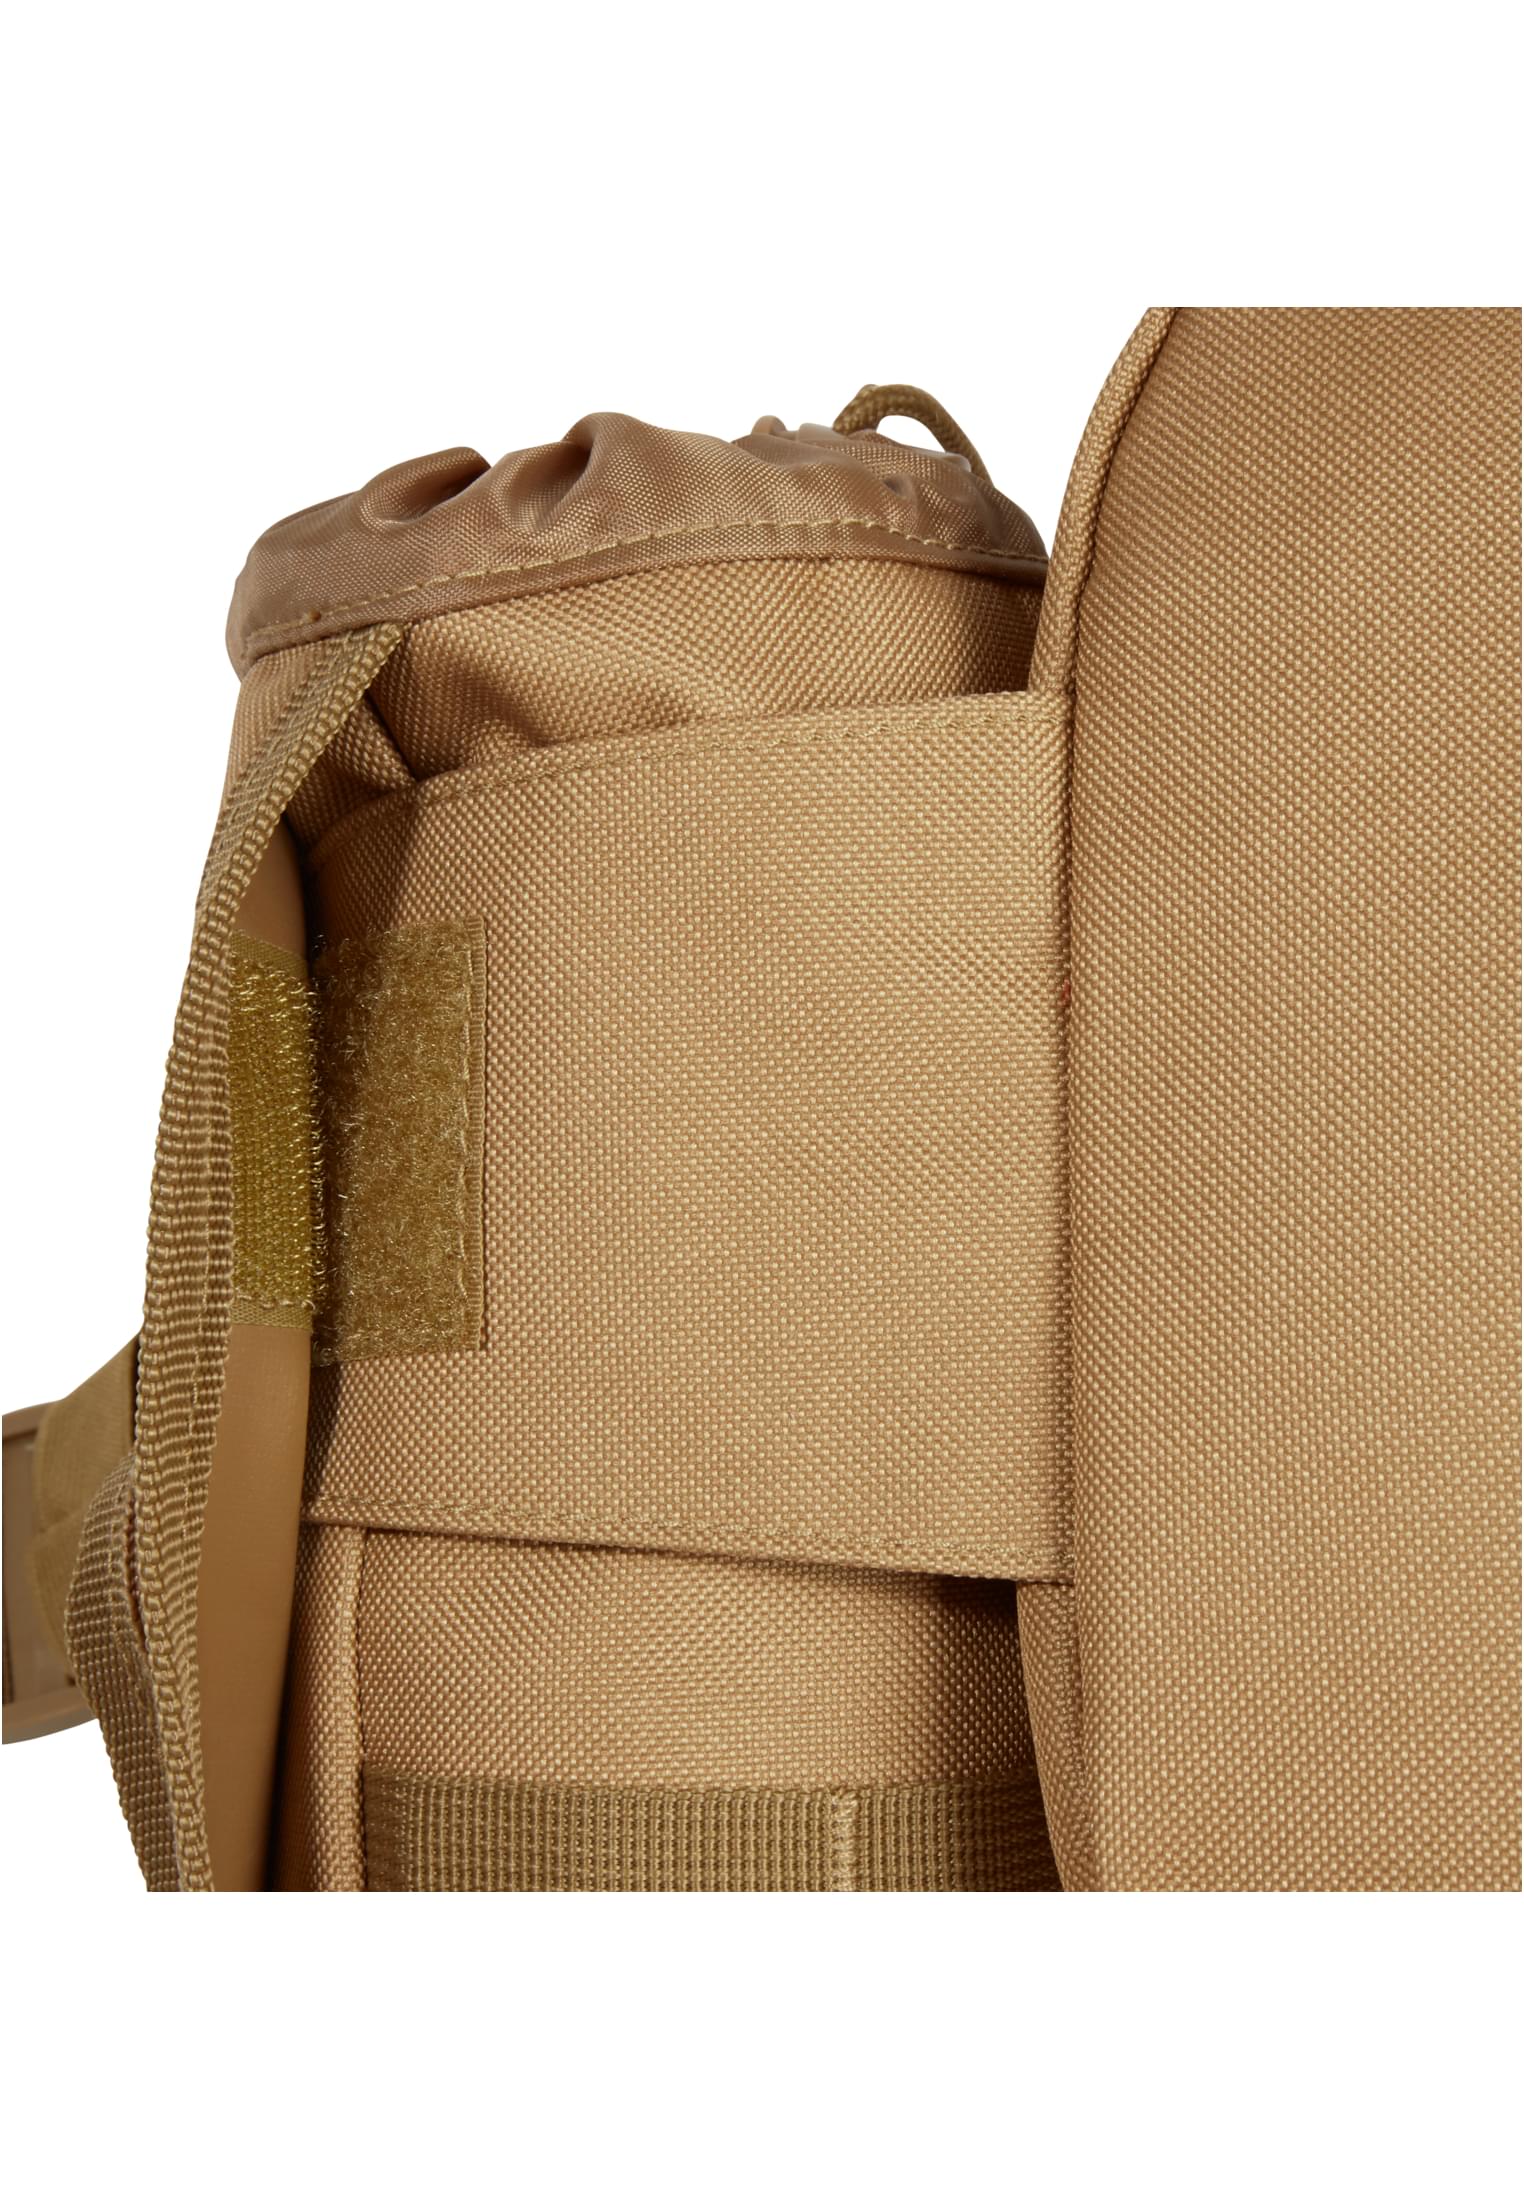 Taschen waistbeltbag Allround in Farbe camel